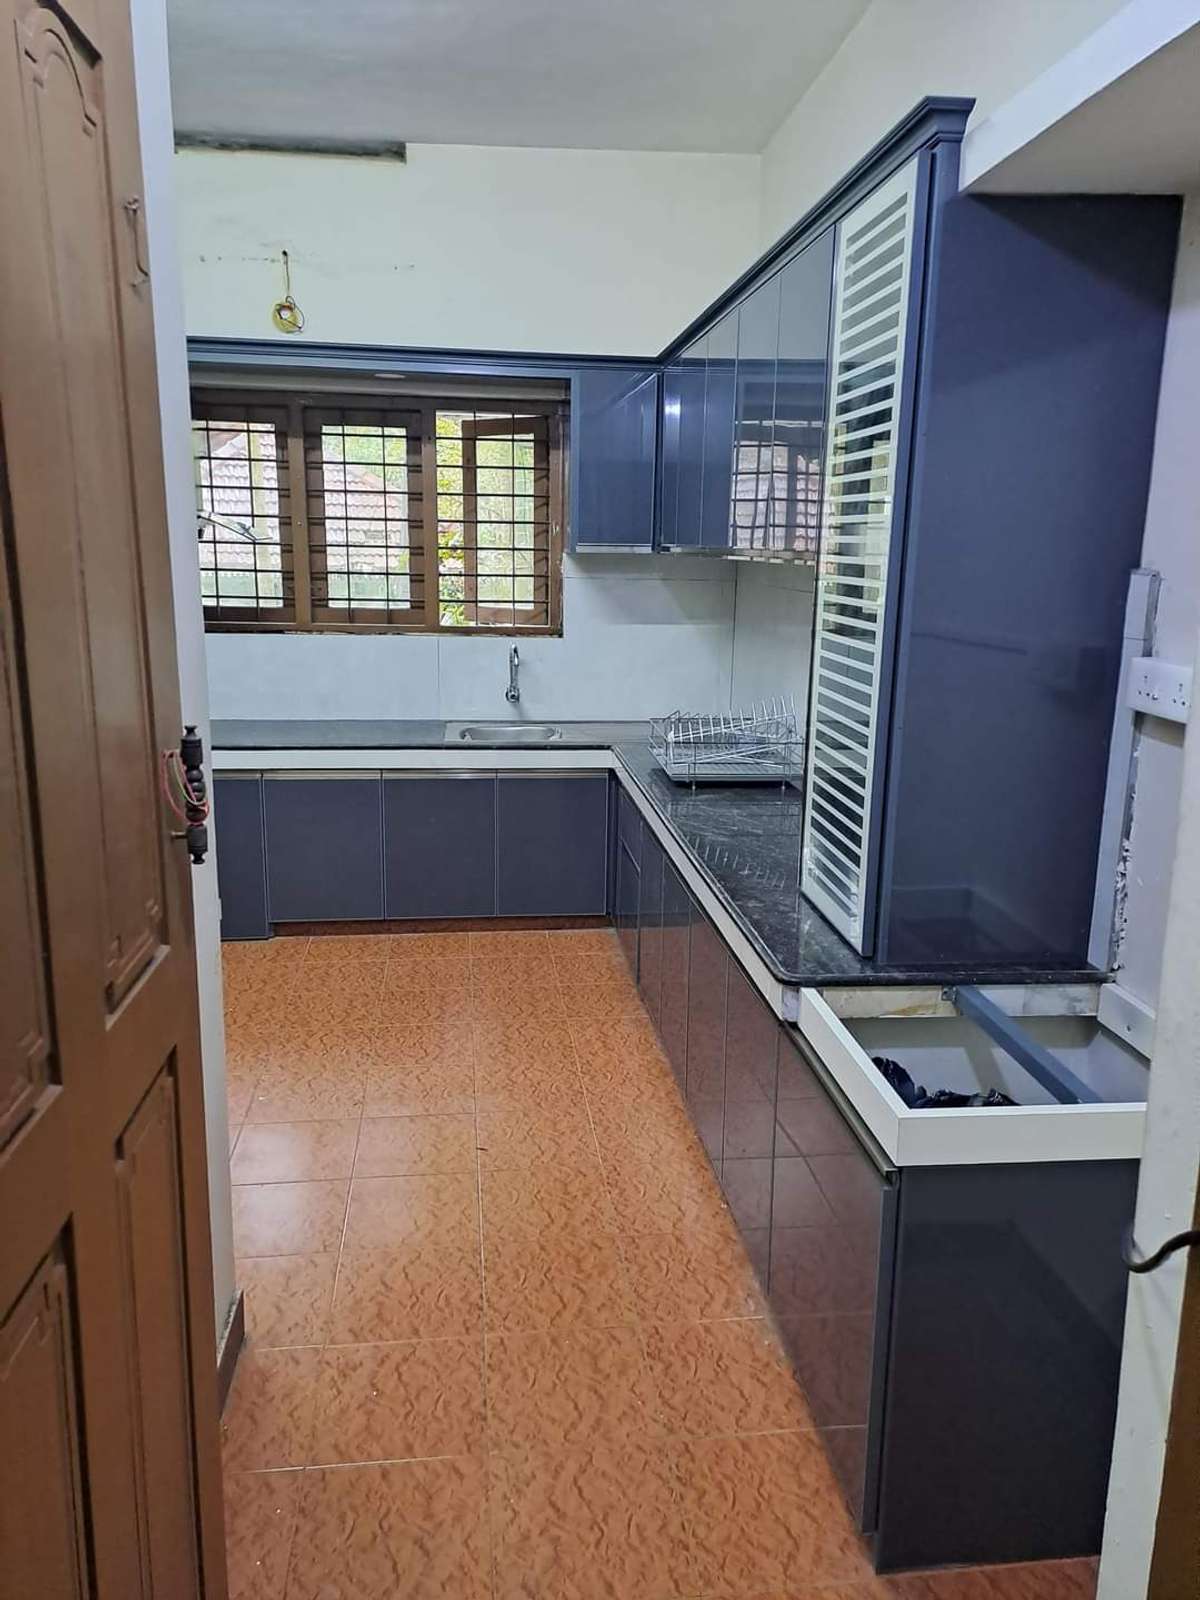 Kitchen, Storage, Window Designs by Interior Designer shahul AM, Thrissur | Kolo